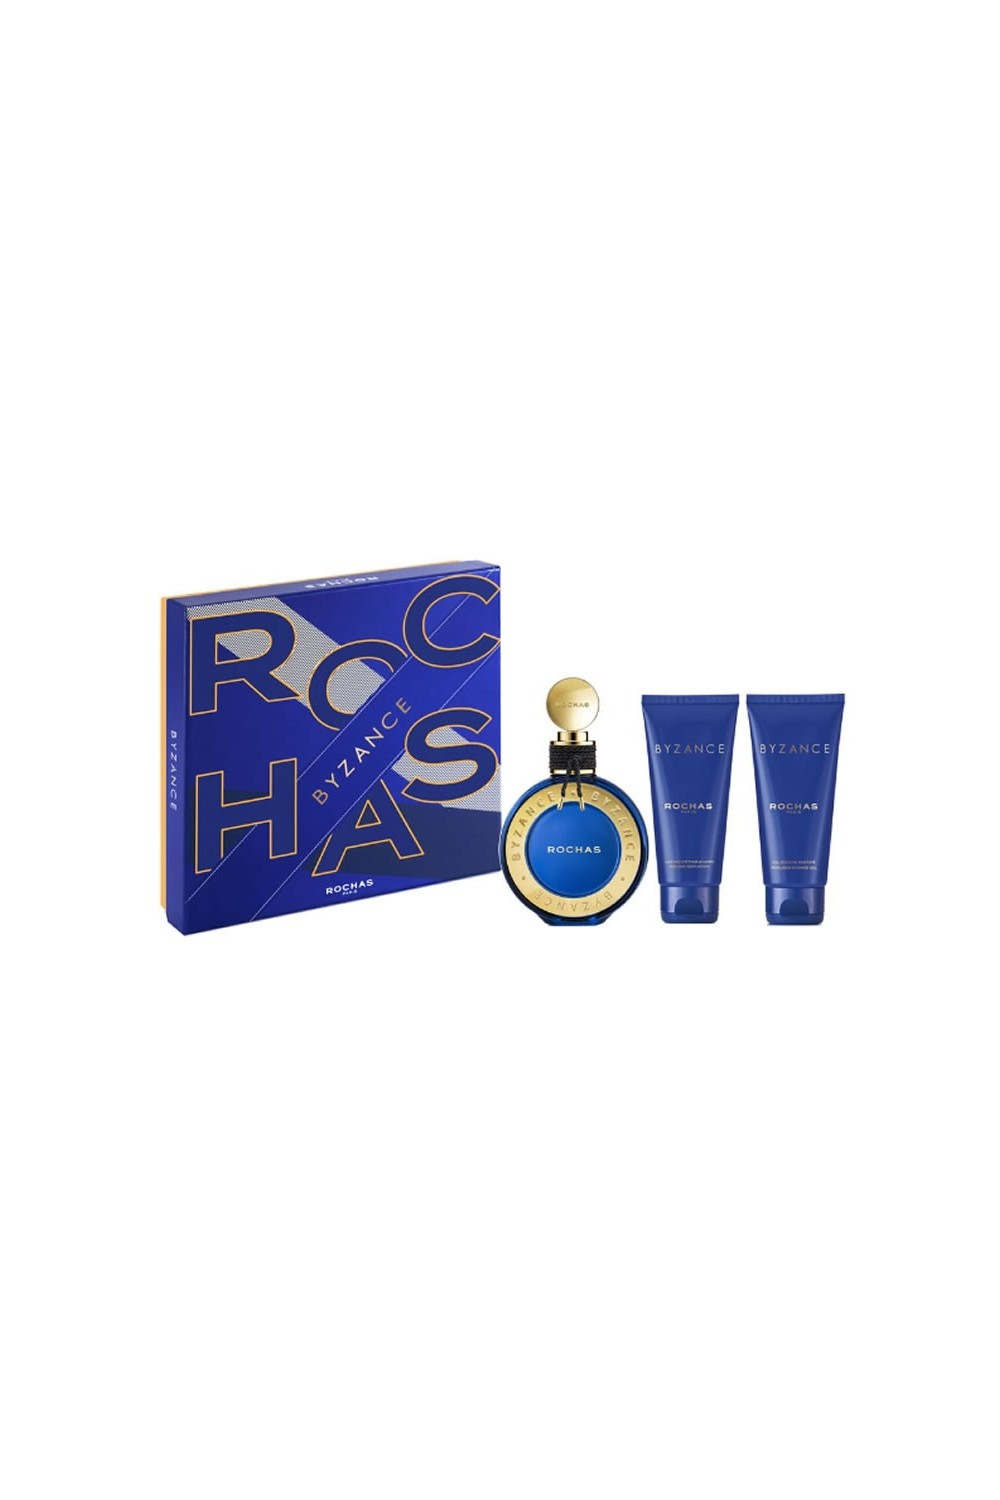 Rochas Byzance Eau De Perfume Spray 90ml Set 3 Pieces